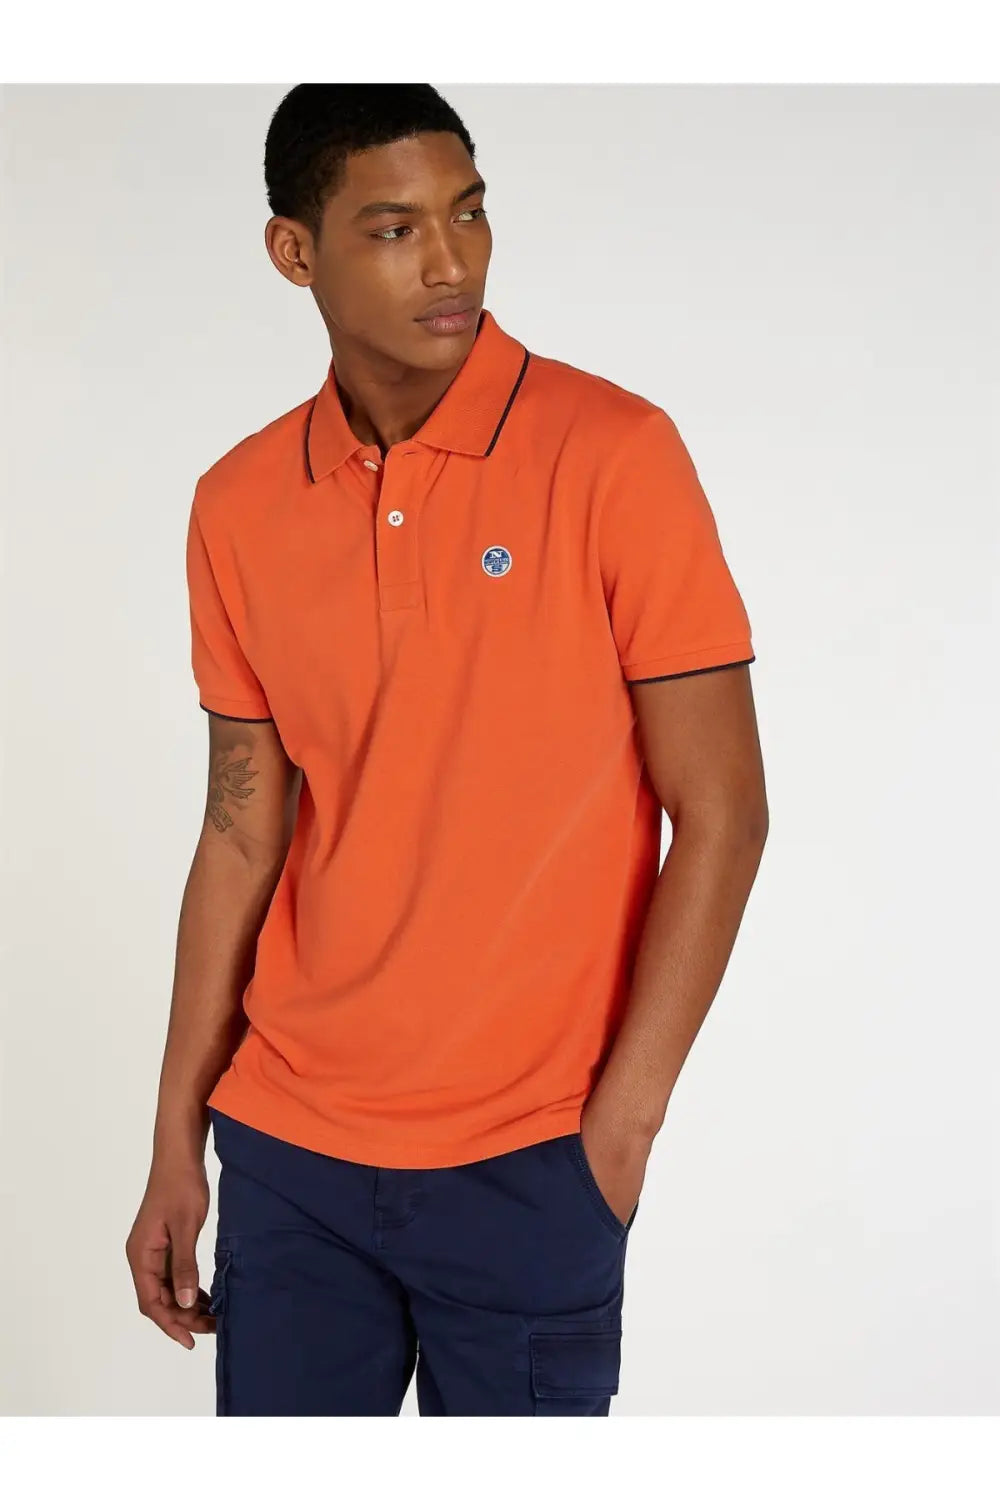 North Sails Cotton Pique Polo Shirt Orange / S / Legacy